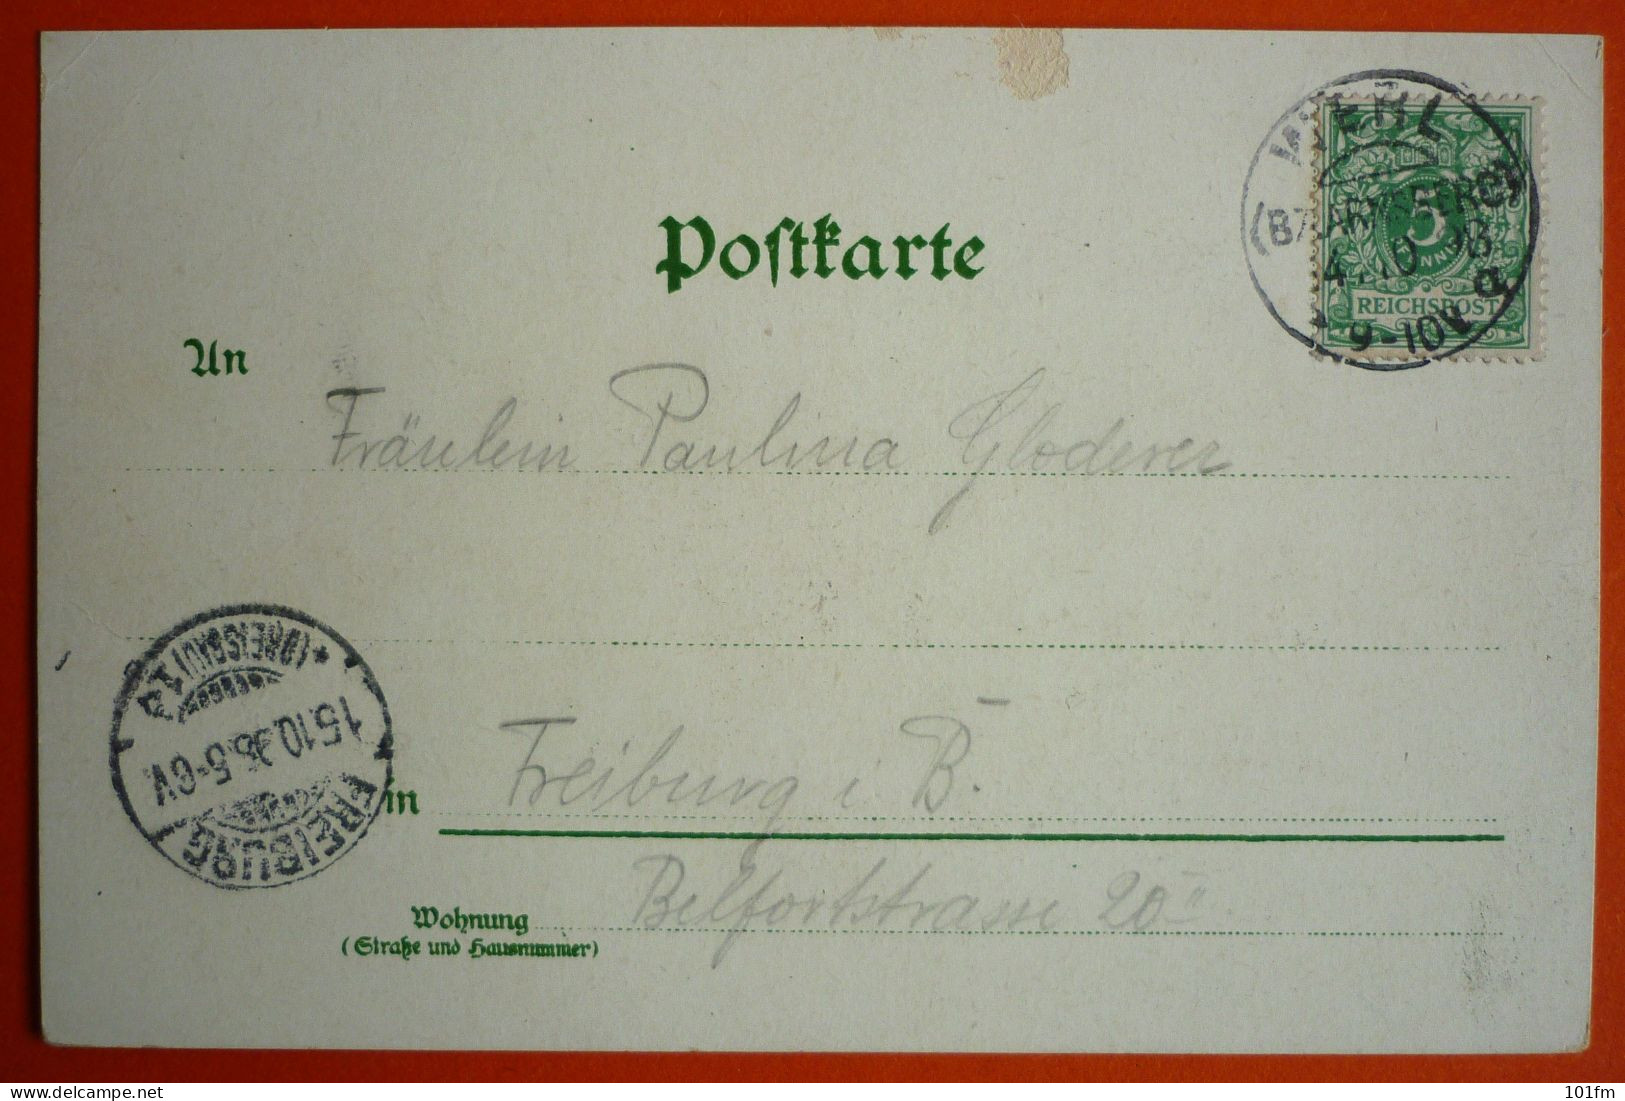 GERMANY - NORDRHEIN WESTFALEN - GRUSS AUS WERL, OLD LITHO 1898 - Werl